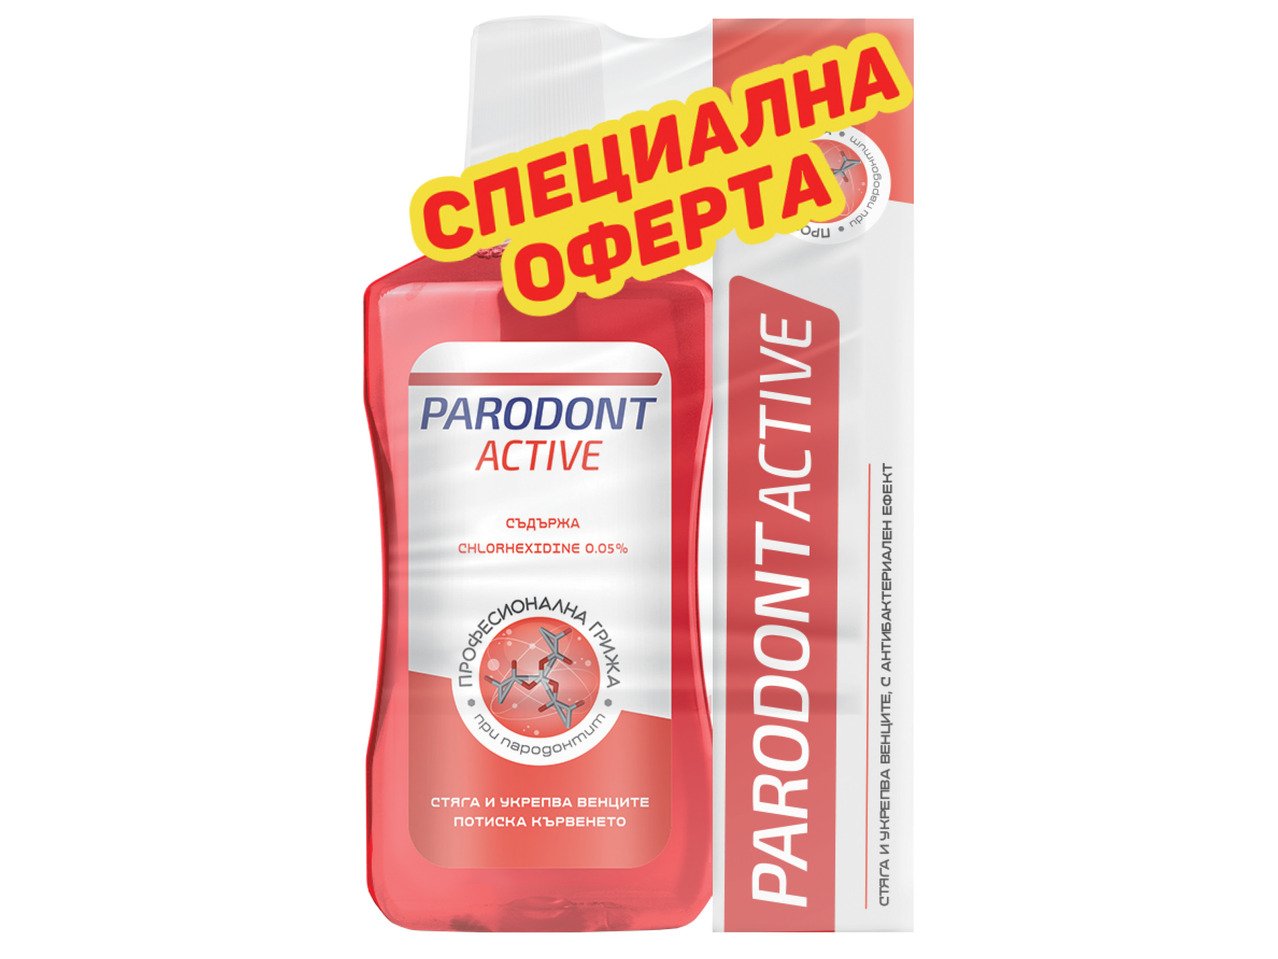 Parodont Active Промопакет